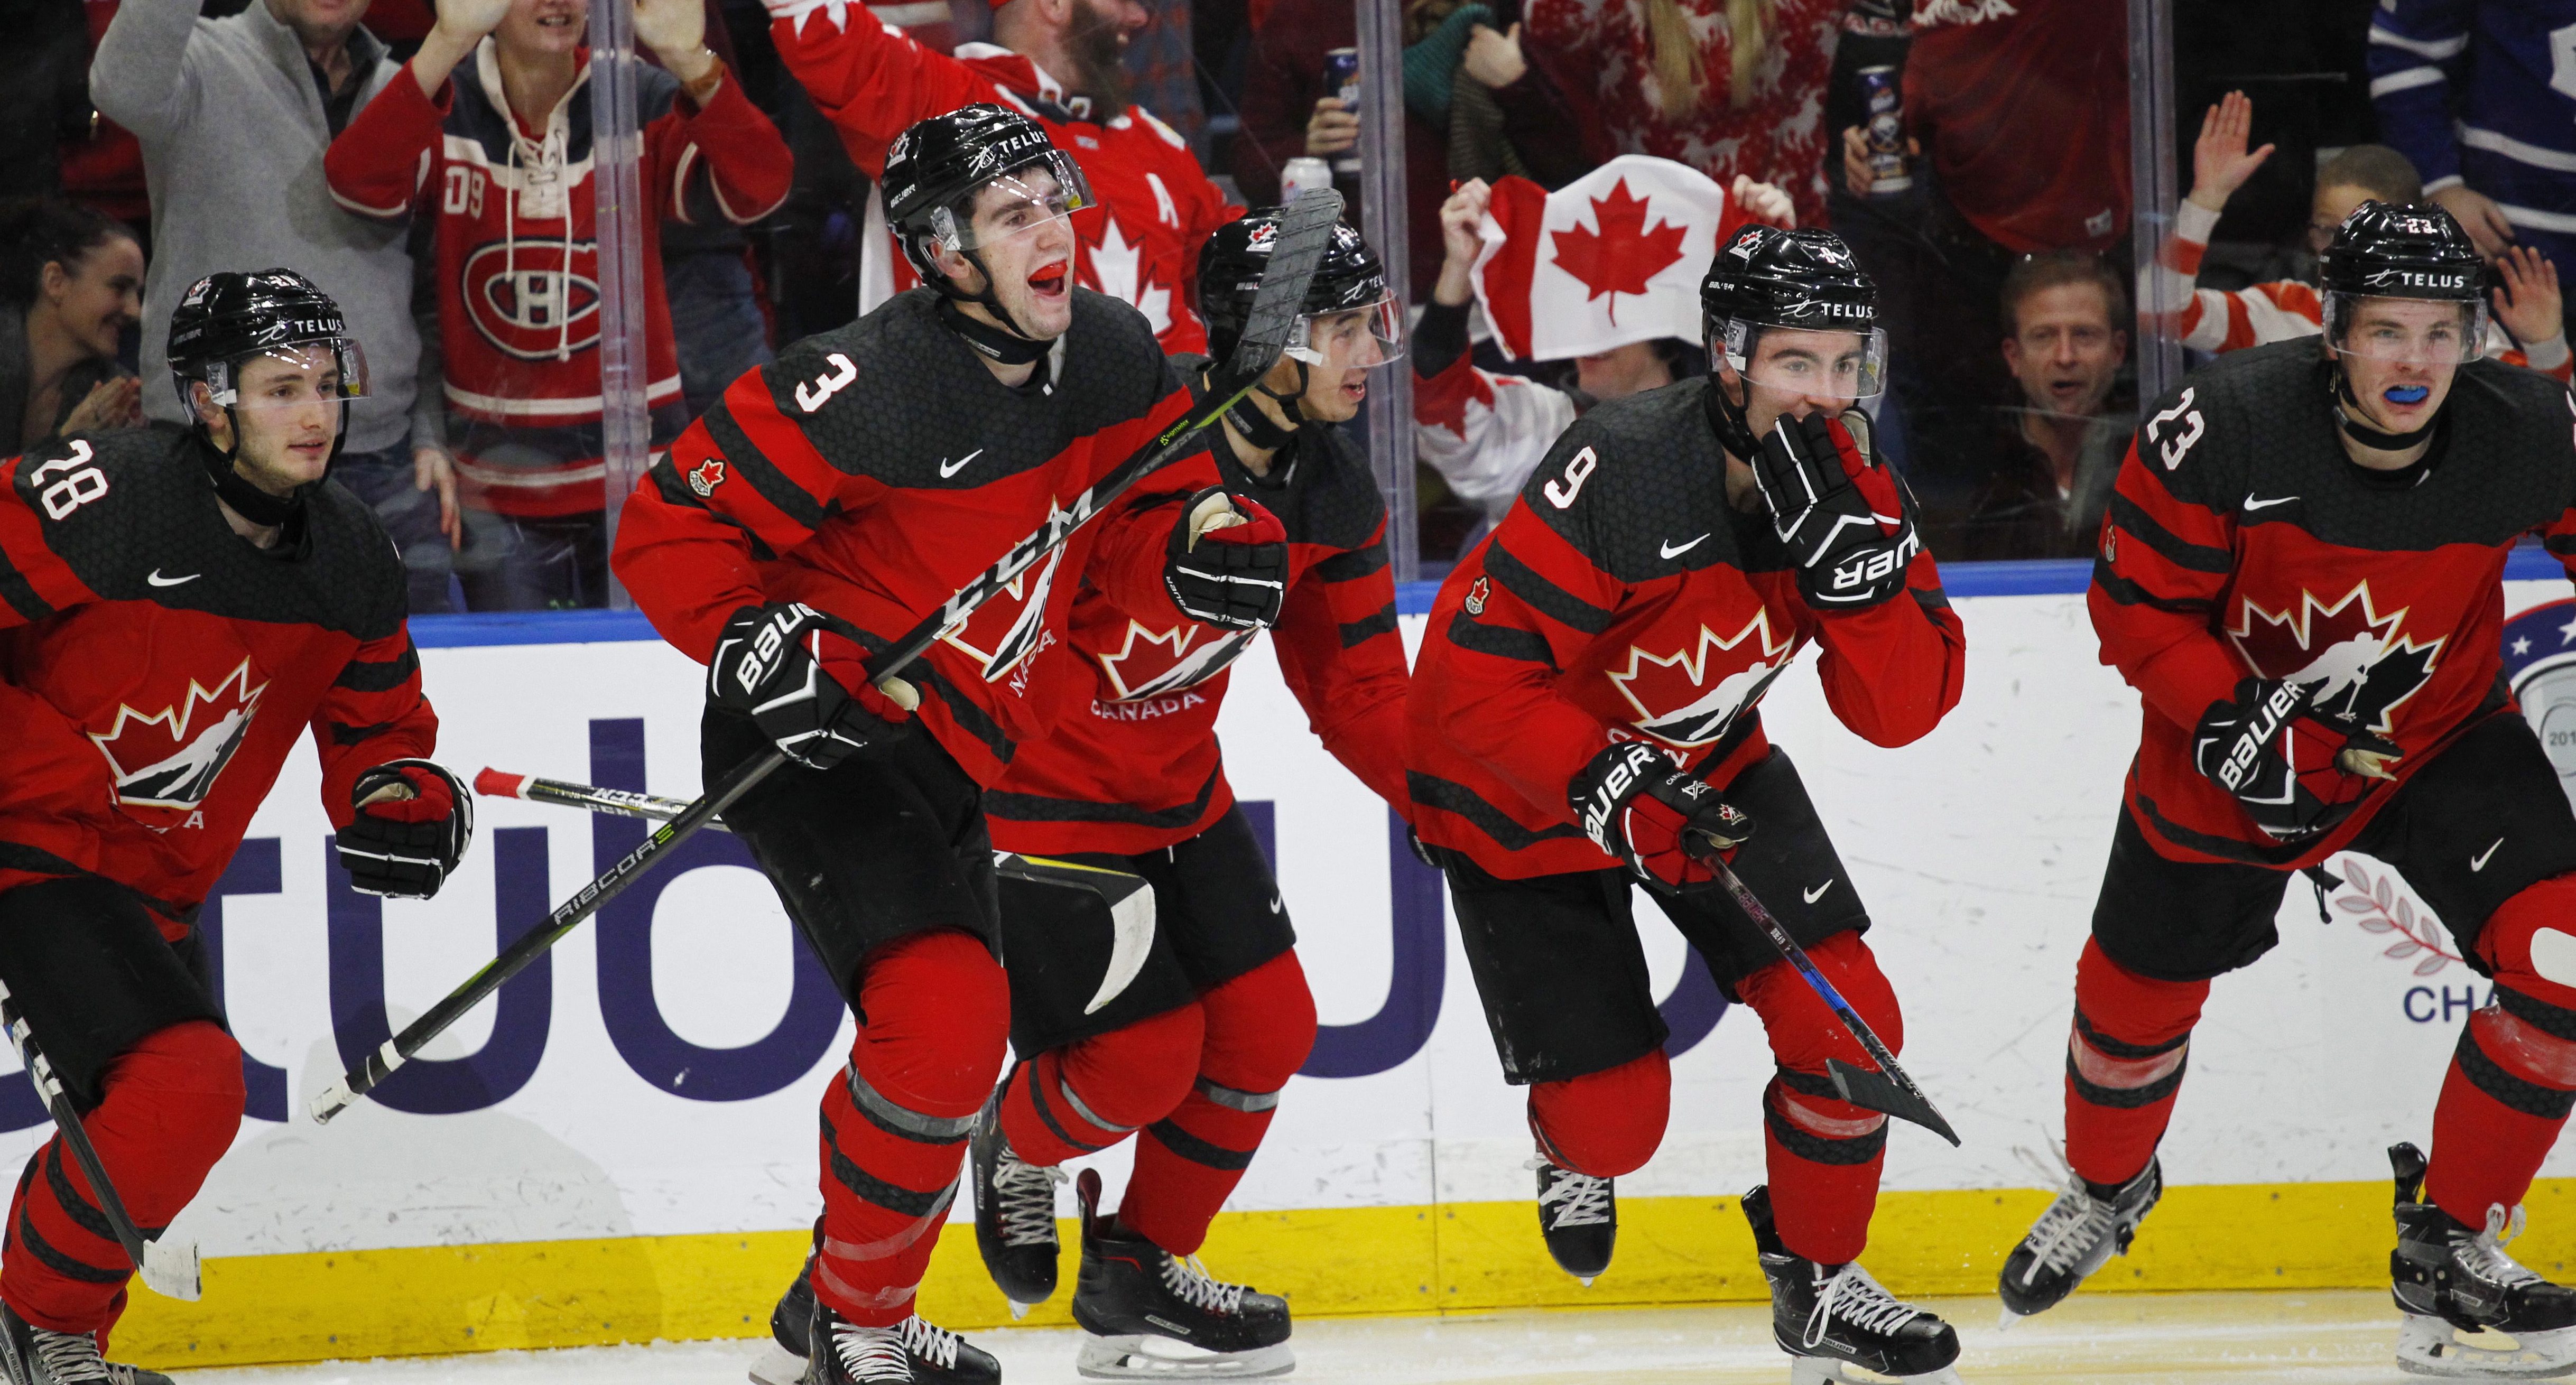 L'or pour le Canada au Mondial junior de hockey Équipe Canada Site